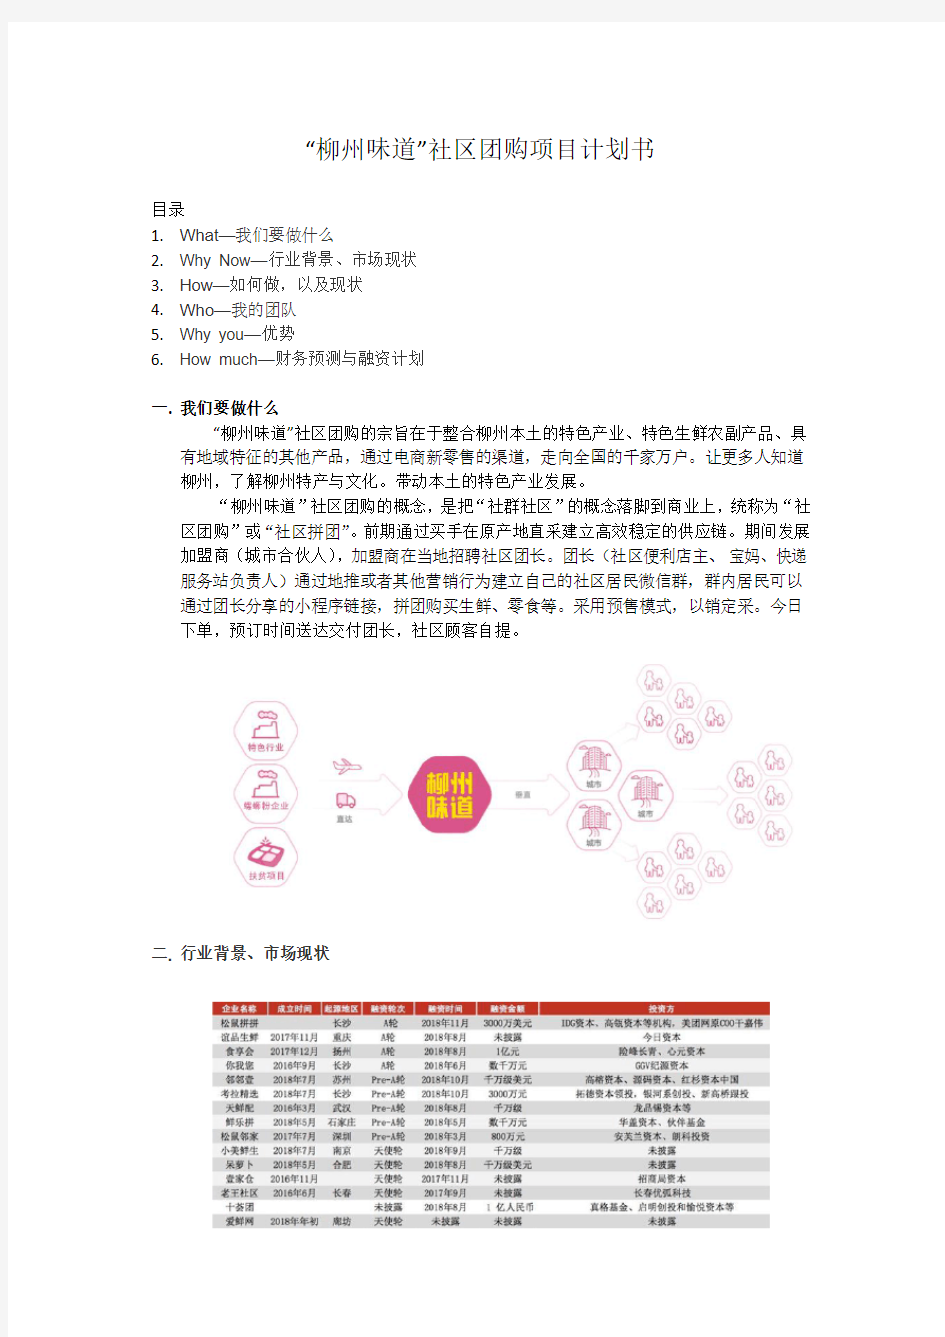 社区团购商业计划书.pdf